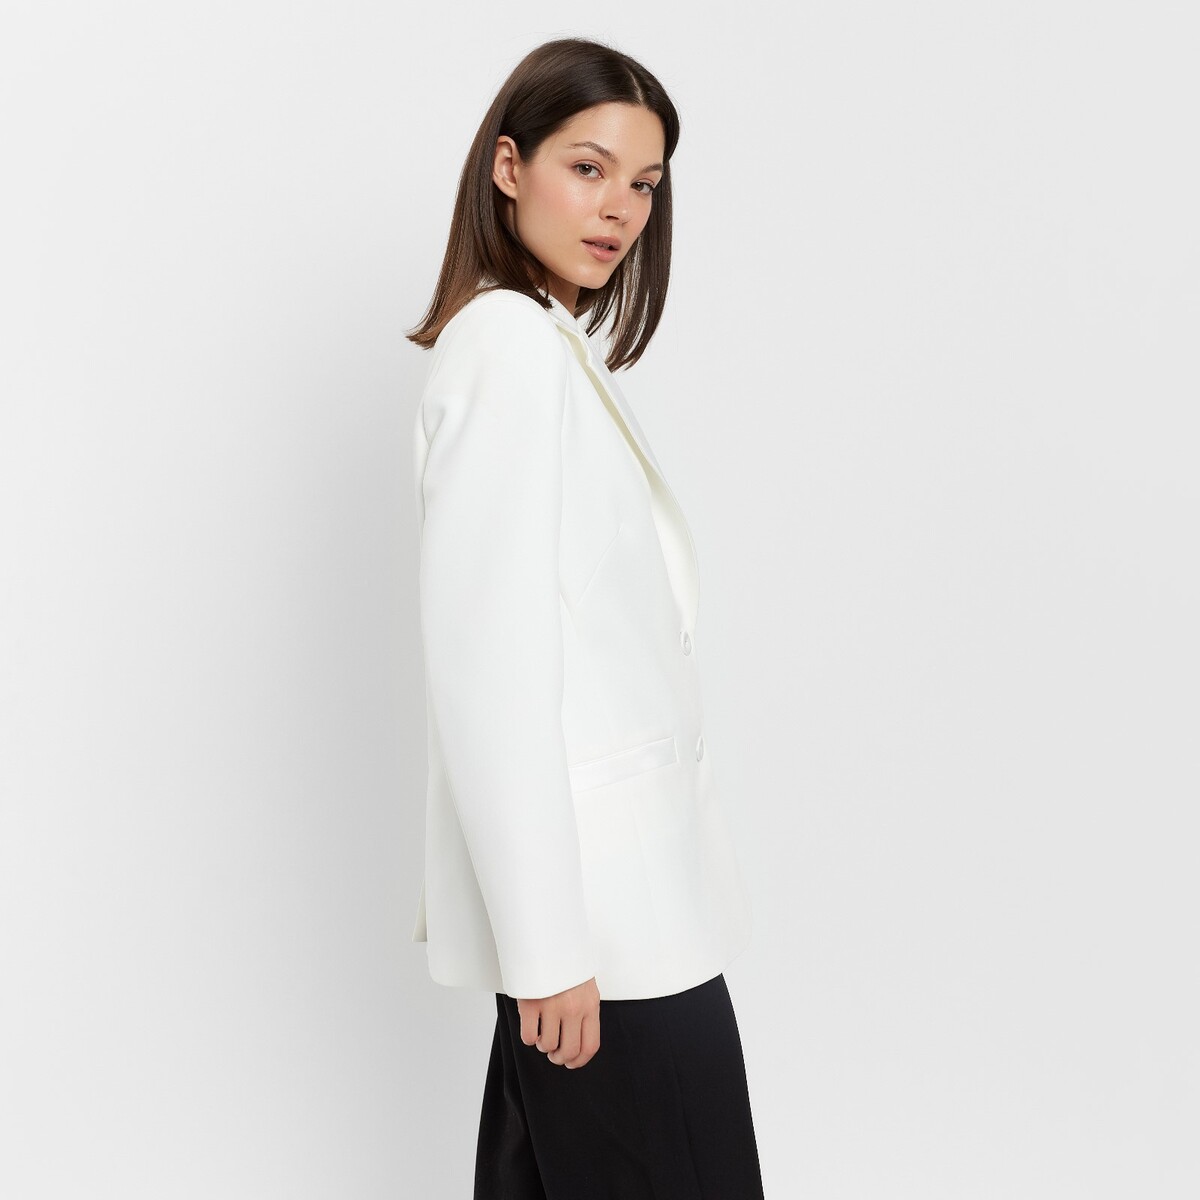 Пиджак MINAKU, размер 42, цвет белый 02054856 - фото 2